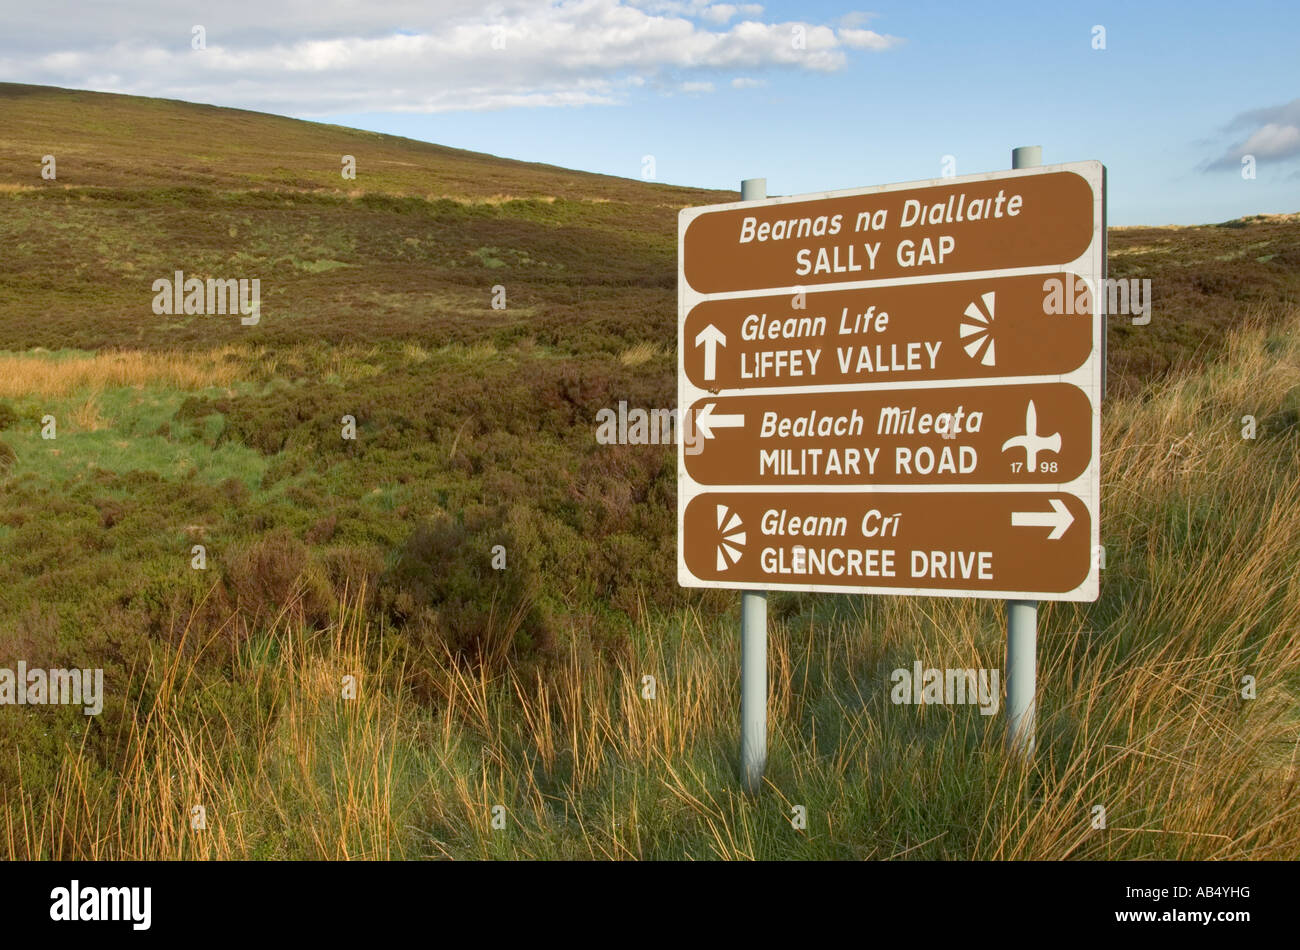 Irlande Le comté de Wicklow mountains Sally Gap road sign en gaélique irlandais et anglais Banque D'Images